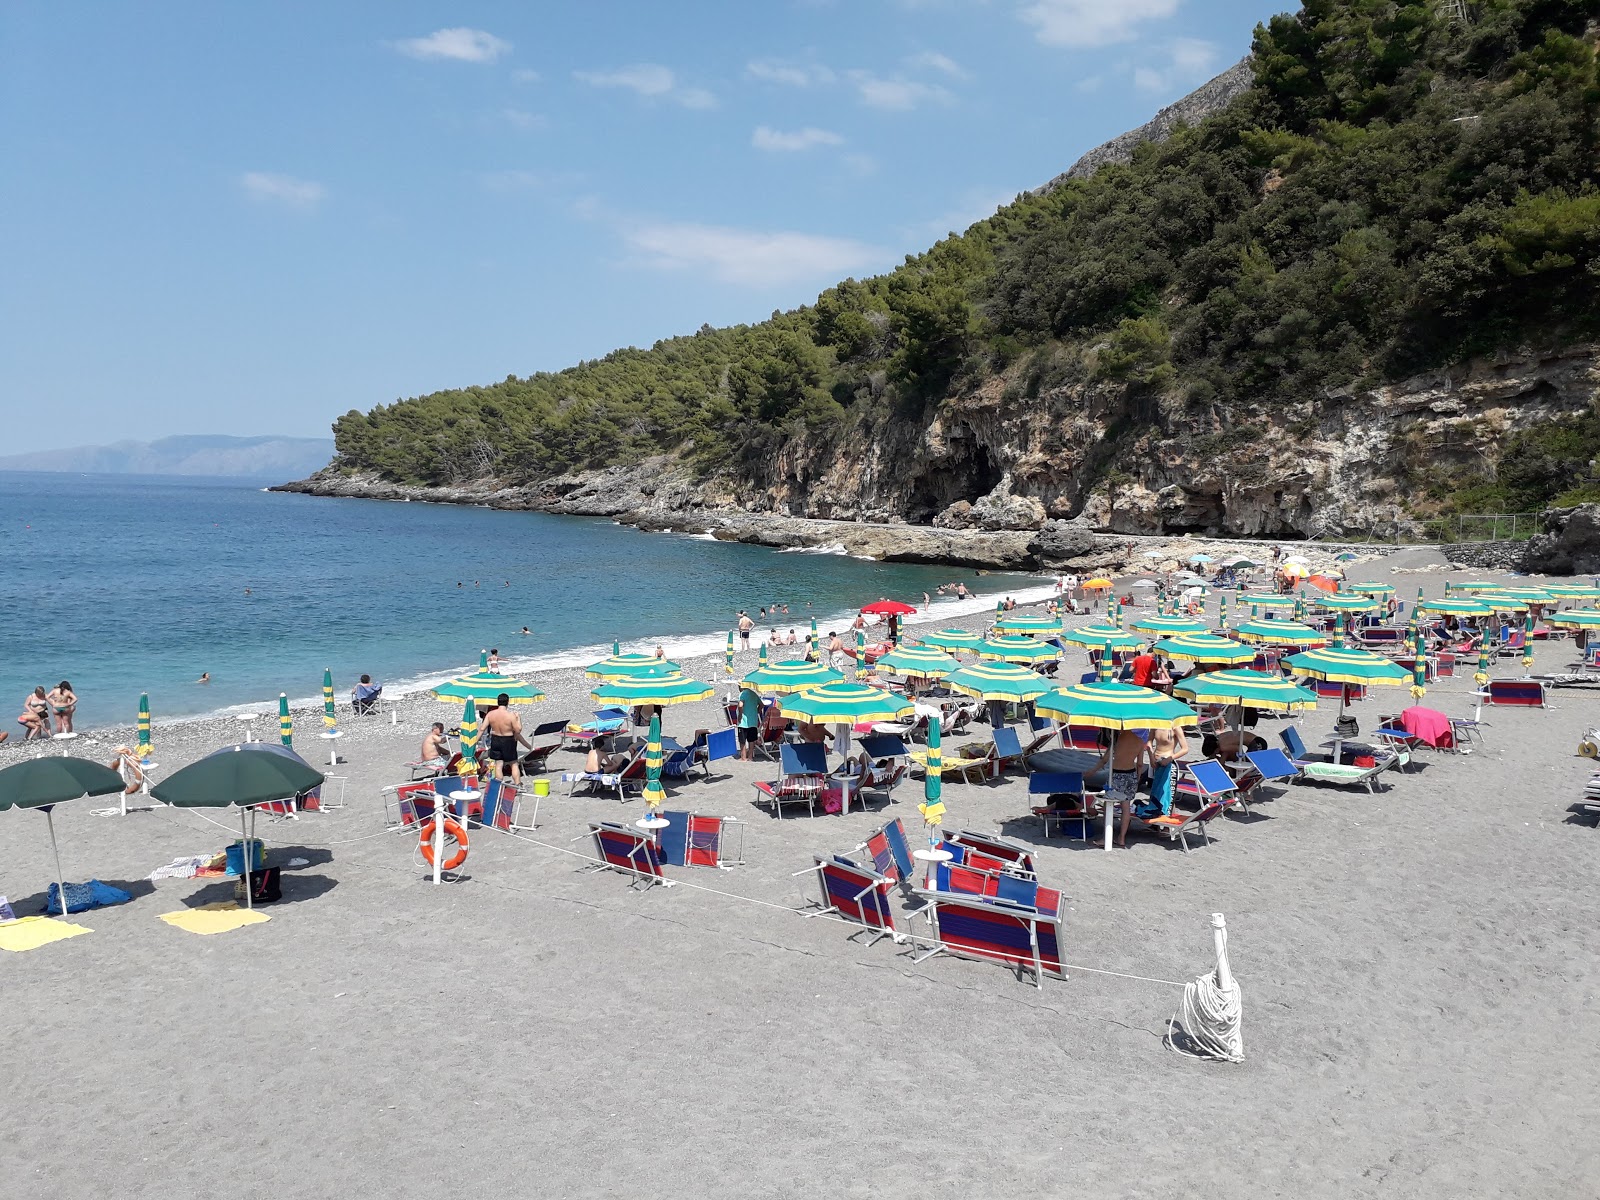 Fotografija Spiaggia di Fiumicello nahaja se v naravnem okolju